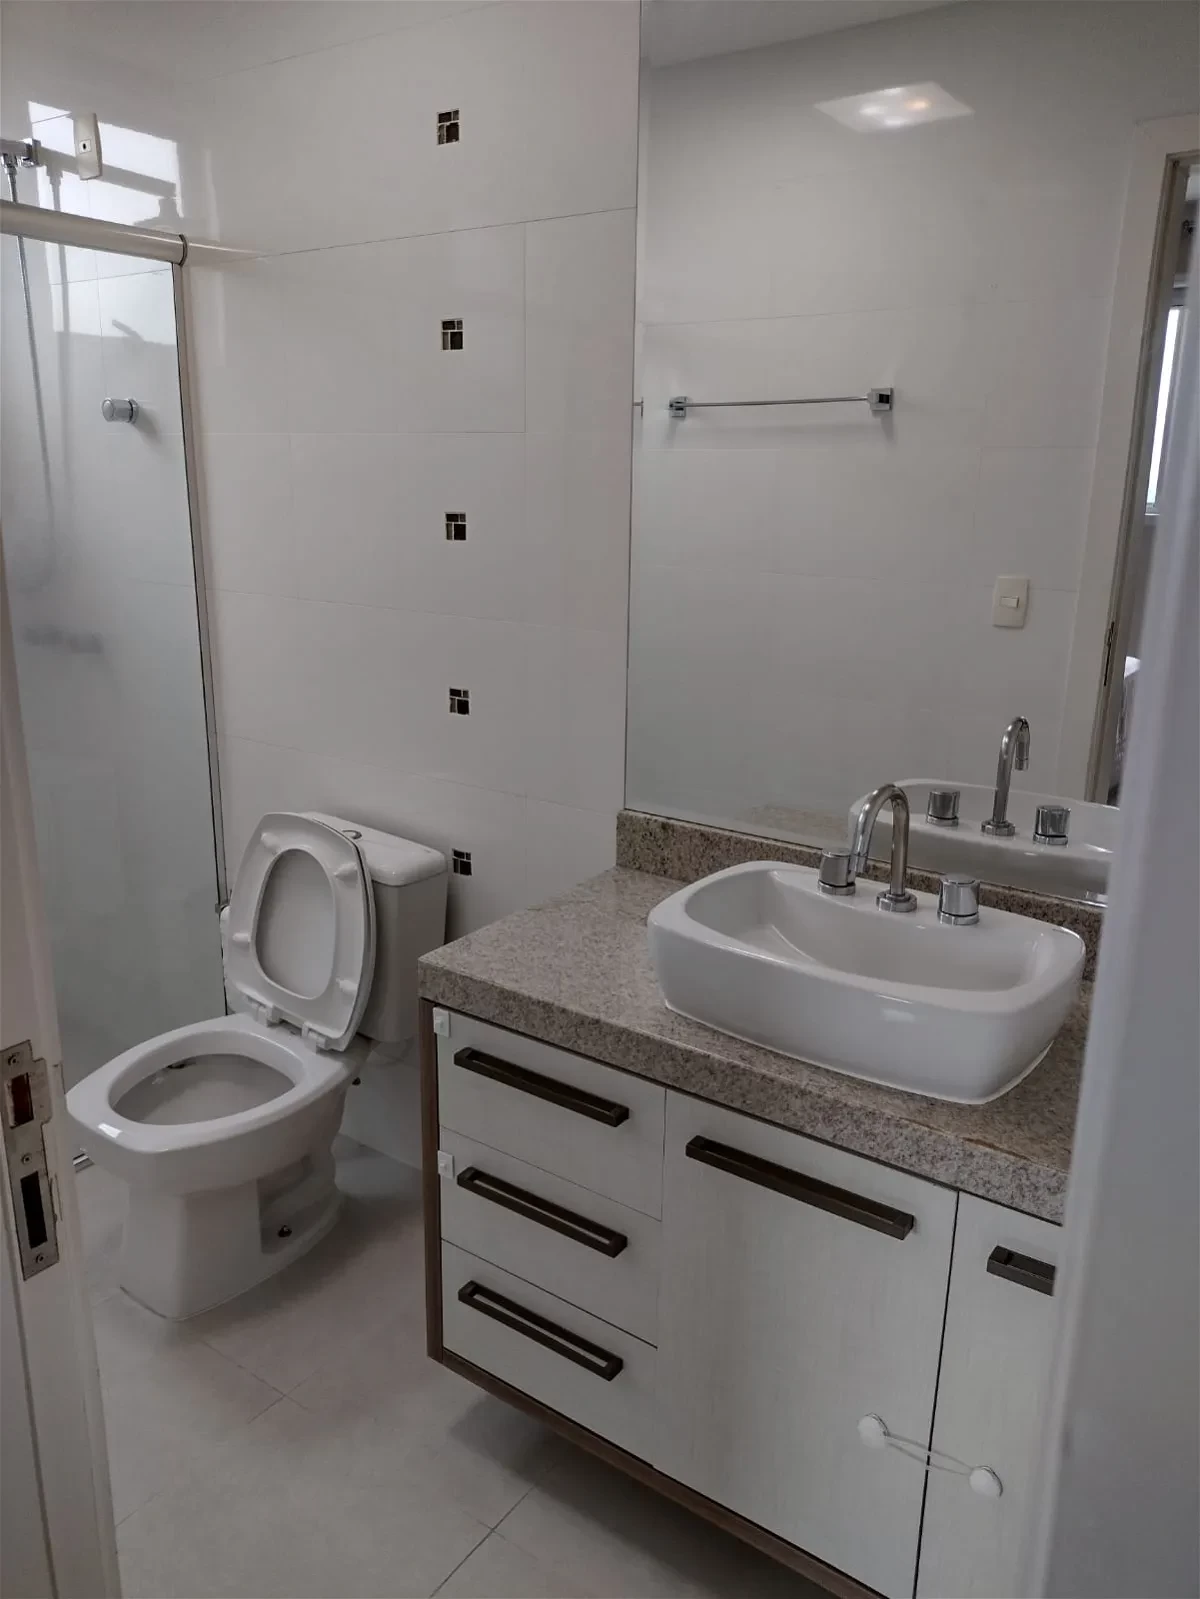 Apartamento semi-Mobiliado com 3 Dormitórios, sendo 1 Suíte + 2 Demi-Suíte no Centro de Balneário Camboriú